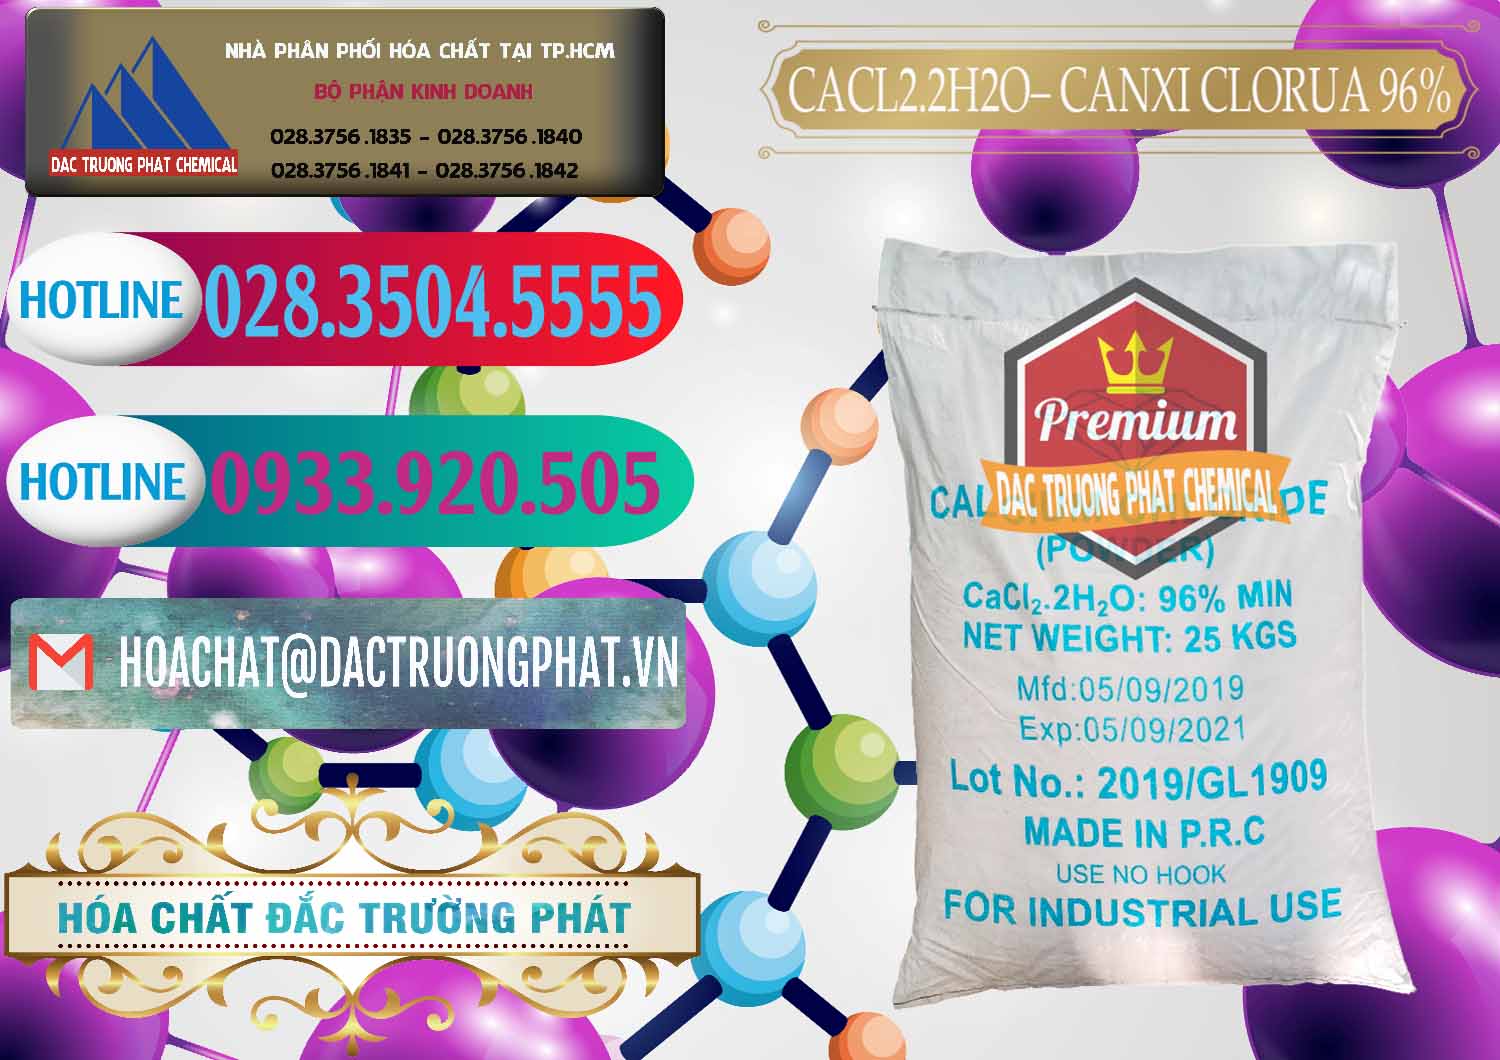 Cty cung ứng và bán CaCl2 – Canxi Clorua 96% Logo Kim Cương Trung Quốc China - 0040 - Nhập khẩu và phân phối hóa chất tại TP.HCM - truongphat.vn